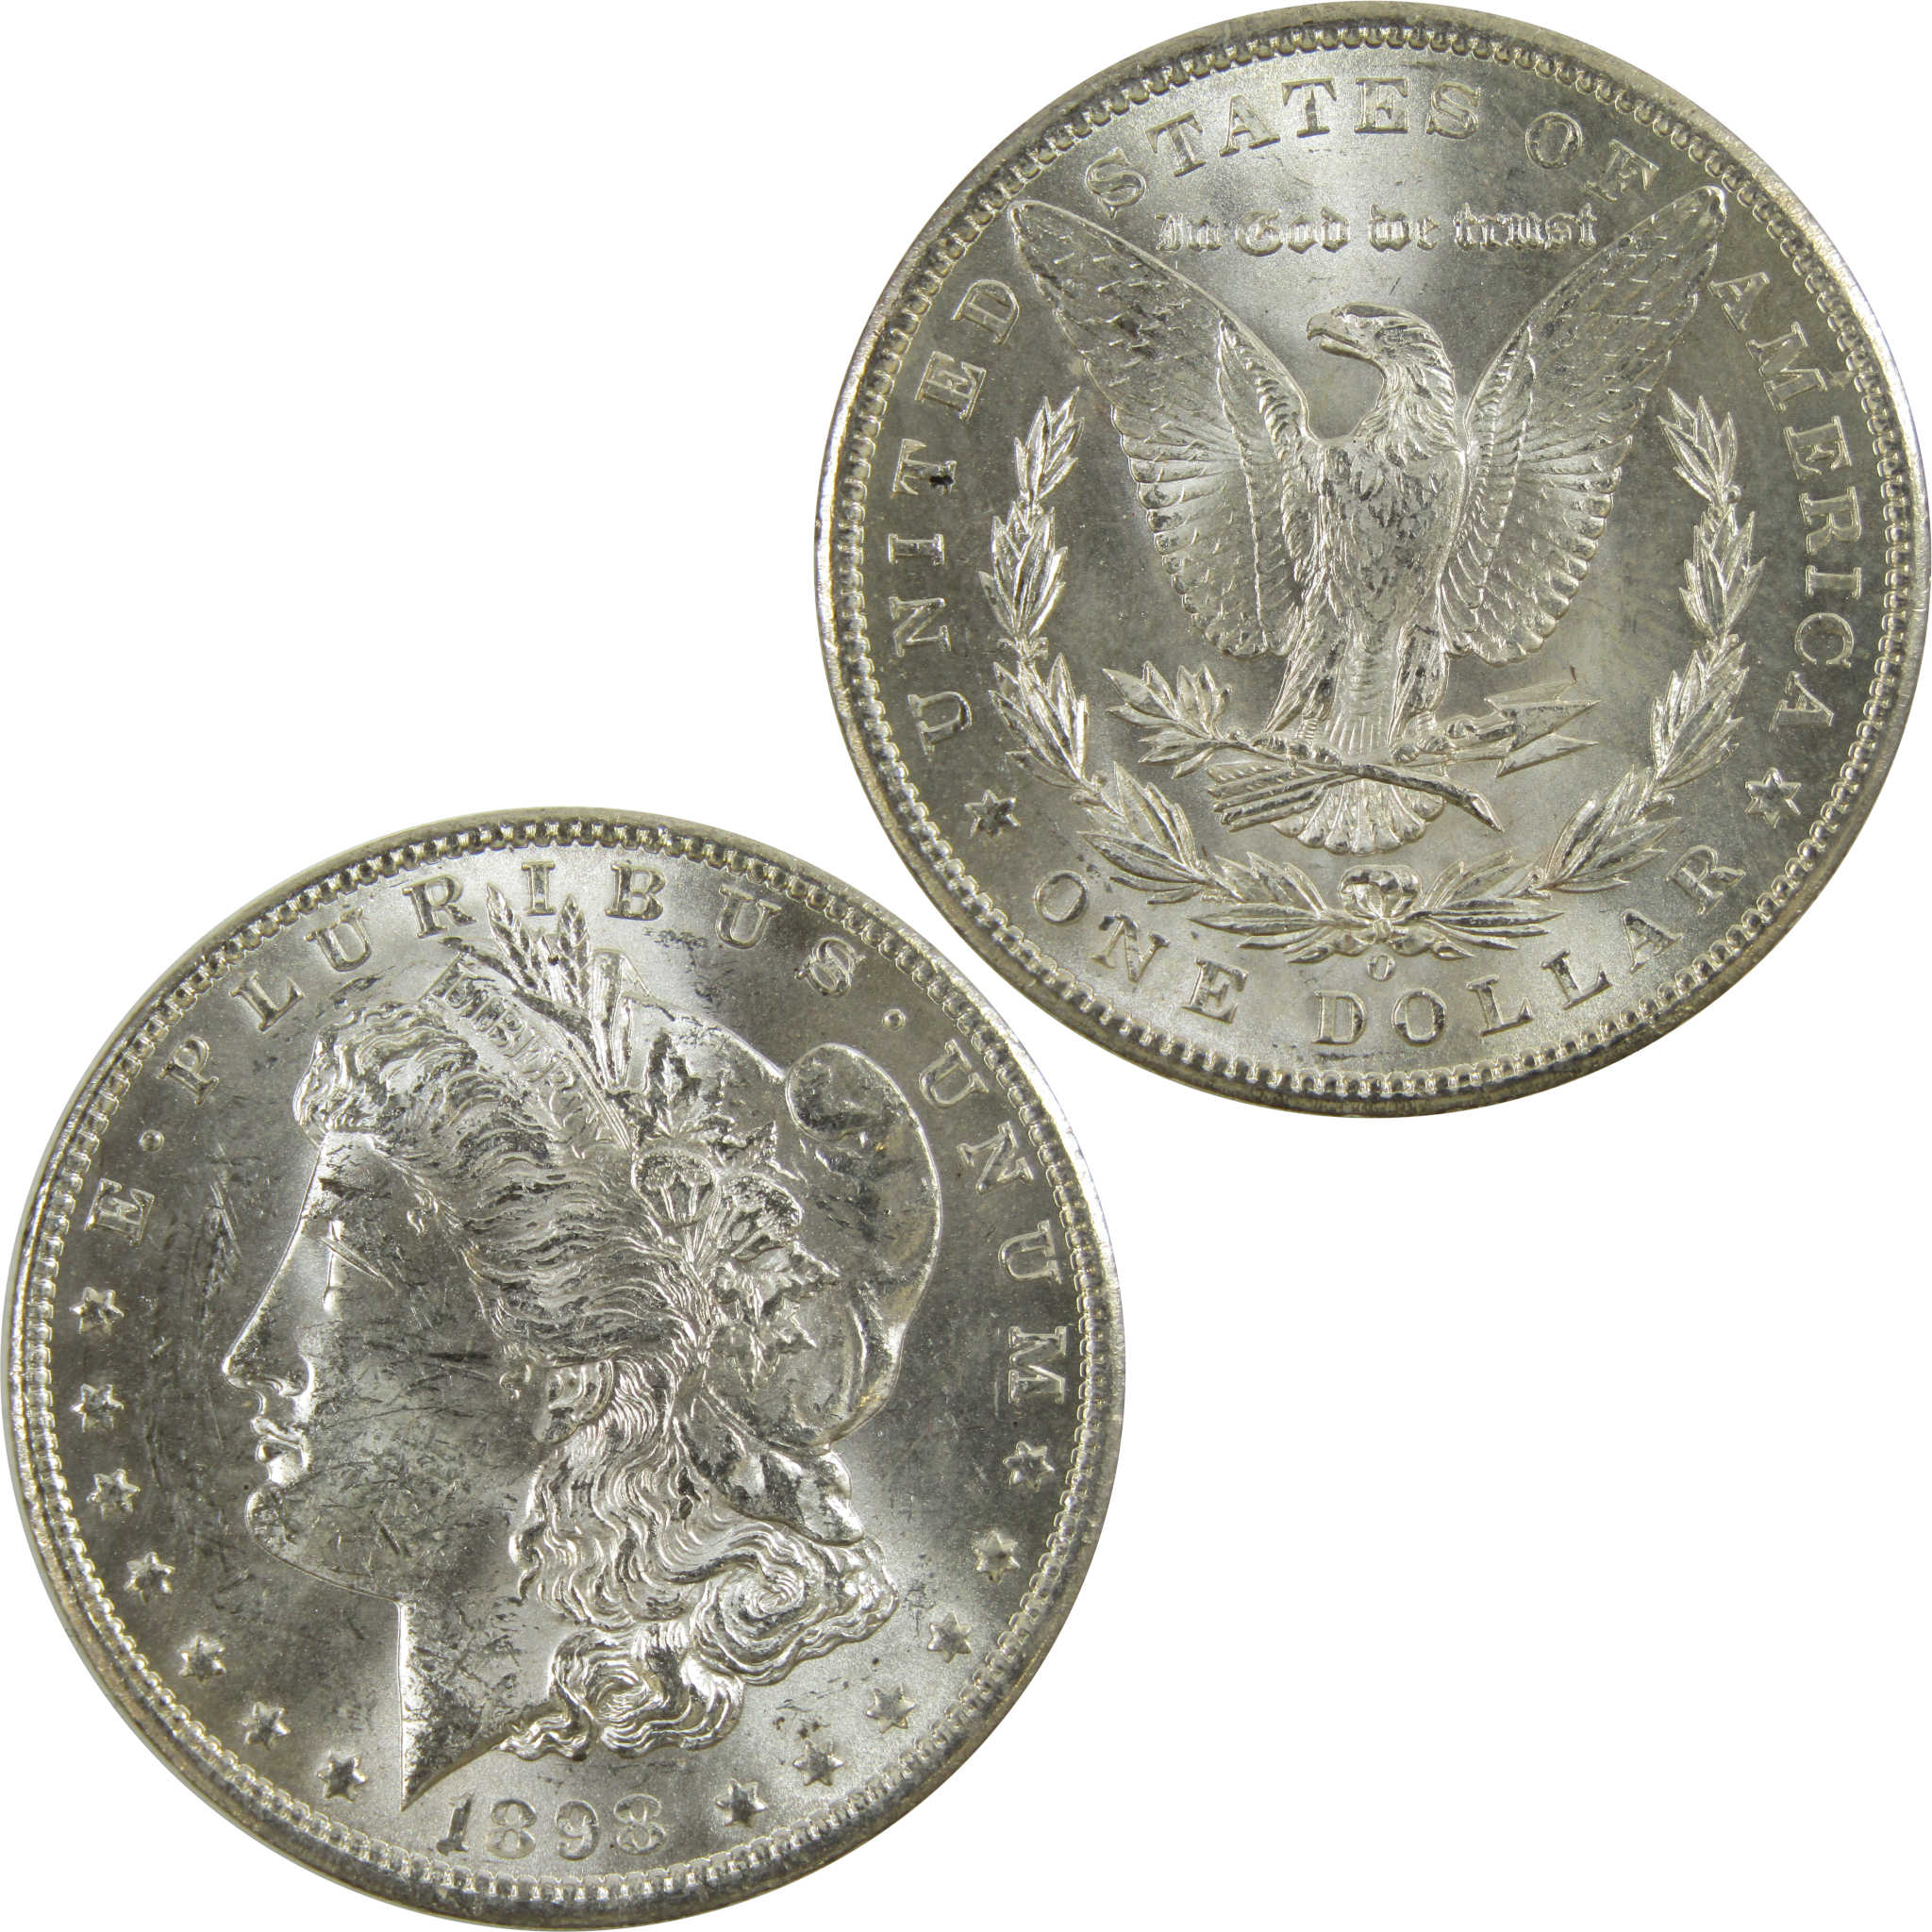 1898 O Morgan Dollar BU Uncirculated 90% Silver $1 Coin SKU:I5207 - Morgan coin - Morgan silver dollar - Morgan silver dollar for sale - Profile Coins &amp; Collectibles